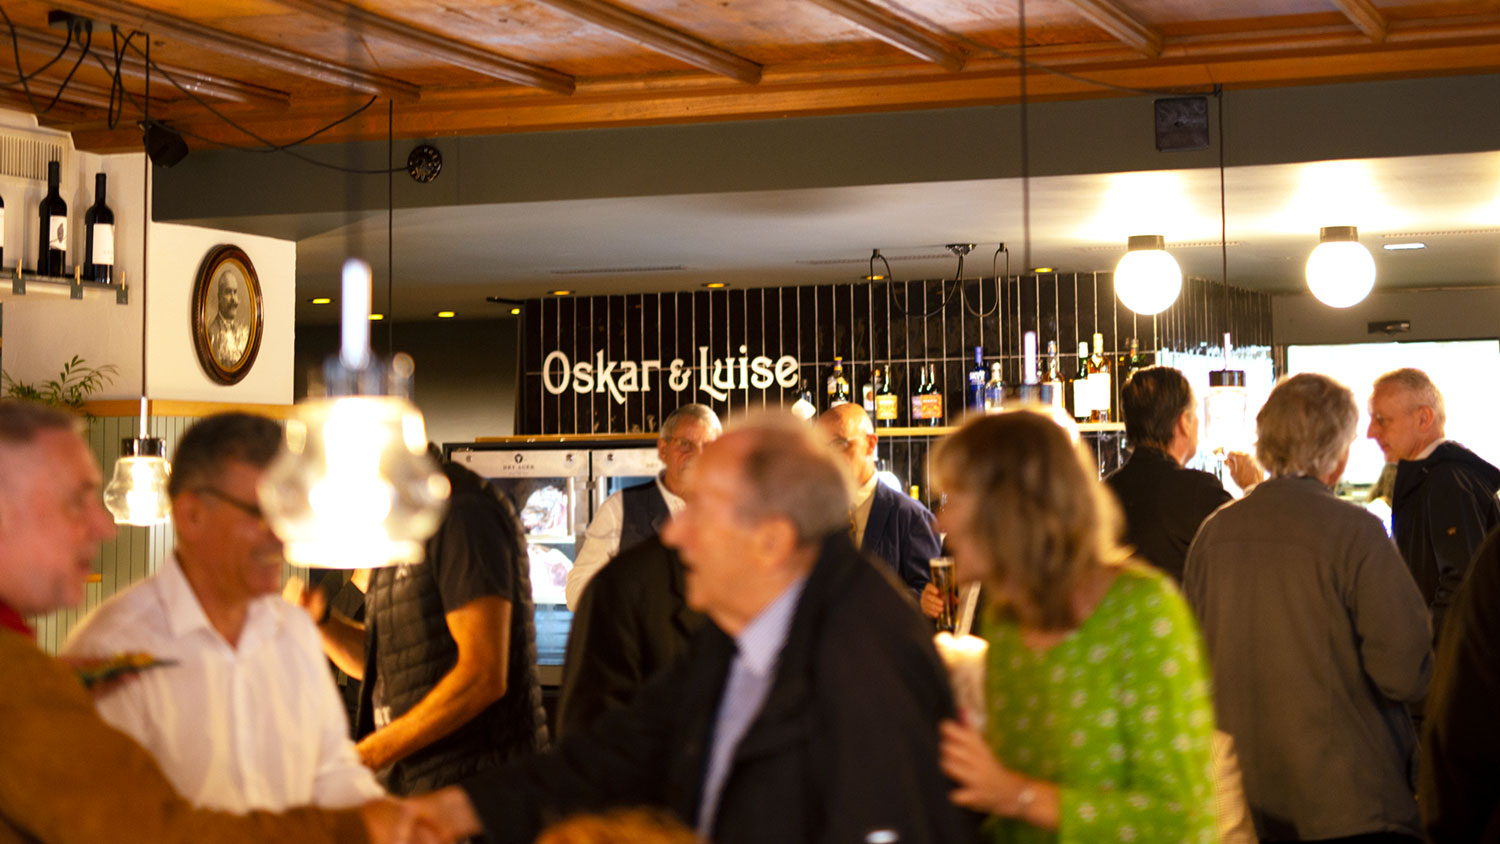 Bild zur Eröffnungsfeier vom Restaurant Oskar & Luise.